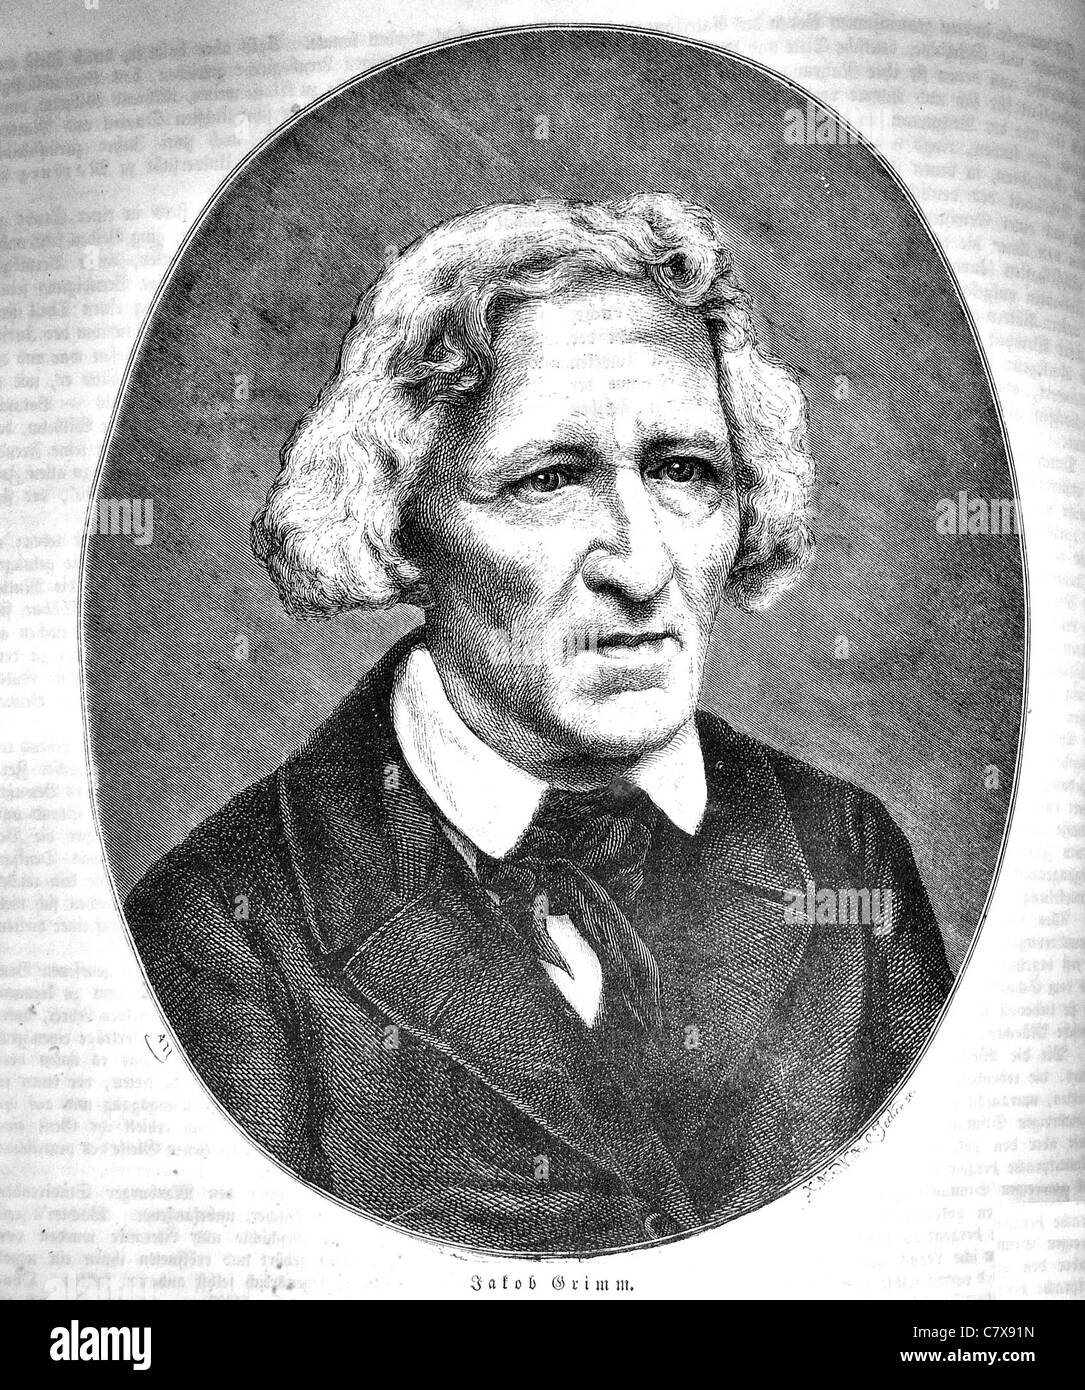 JACOB GRIMM (1785-1863) philosophe allemand et avec son frère Wilhelm l'auteur de contes de Grimm Banque D'Images